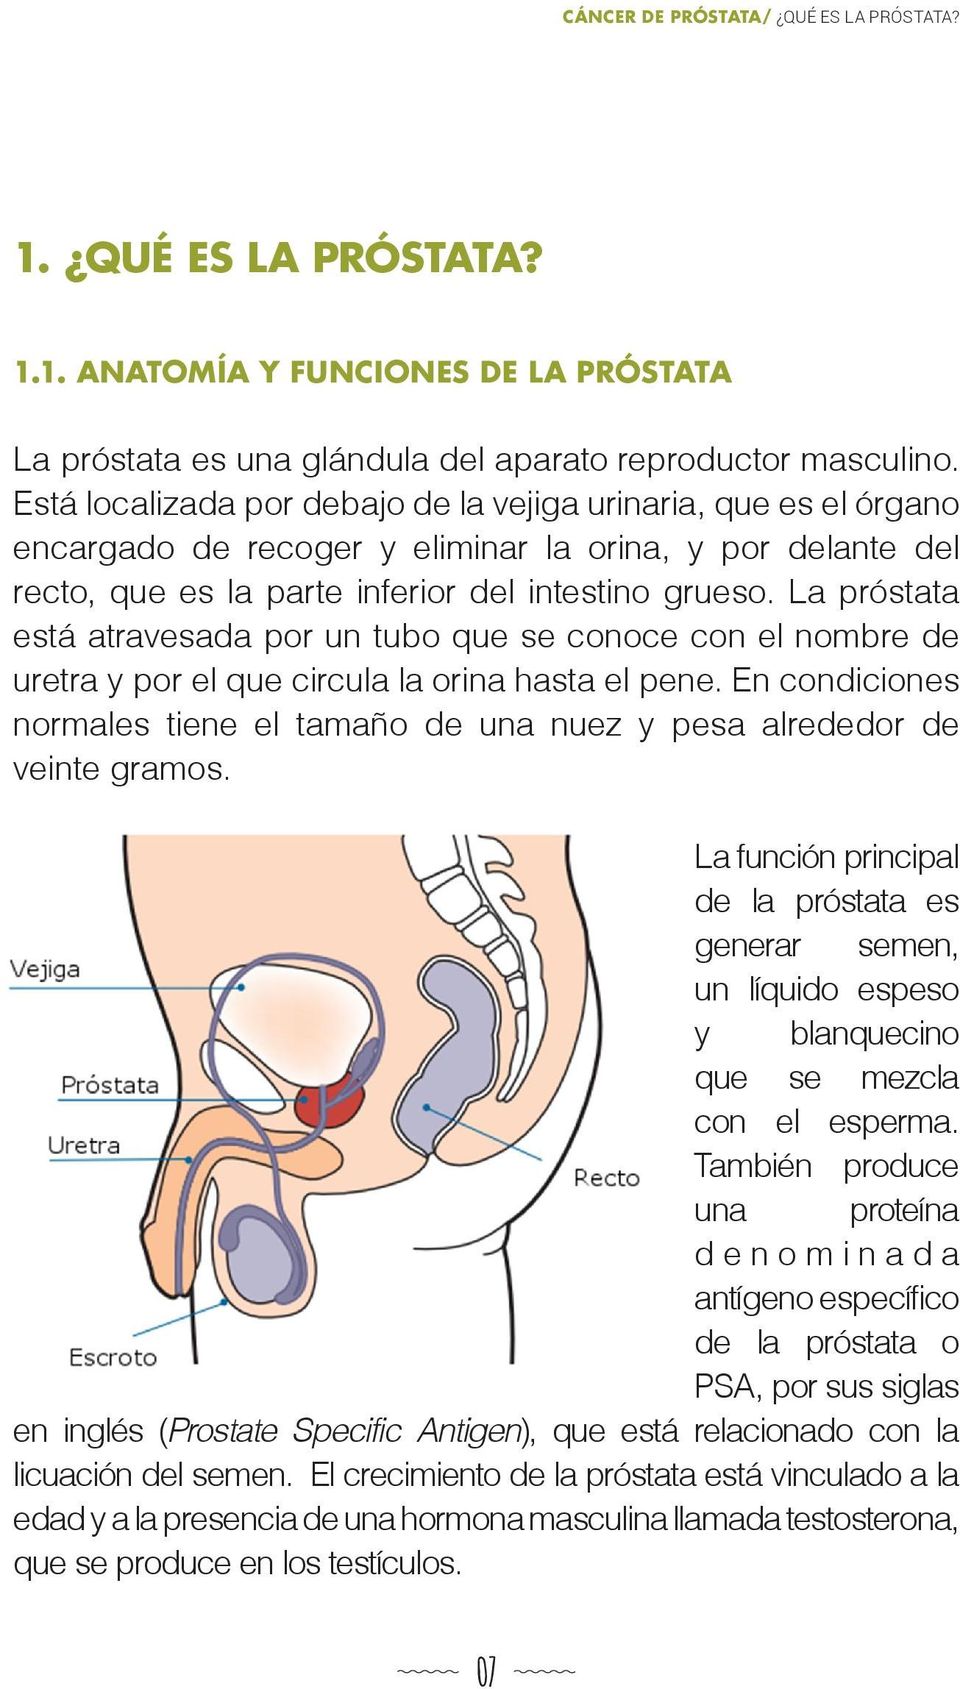 La próstata está atravesada por un tubo que se conoce con el nombre de uretra y por el que circula la orina hasta el pene.